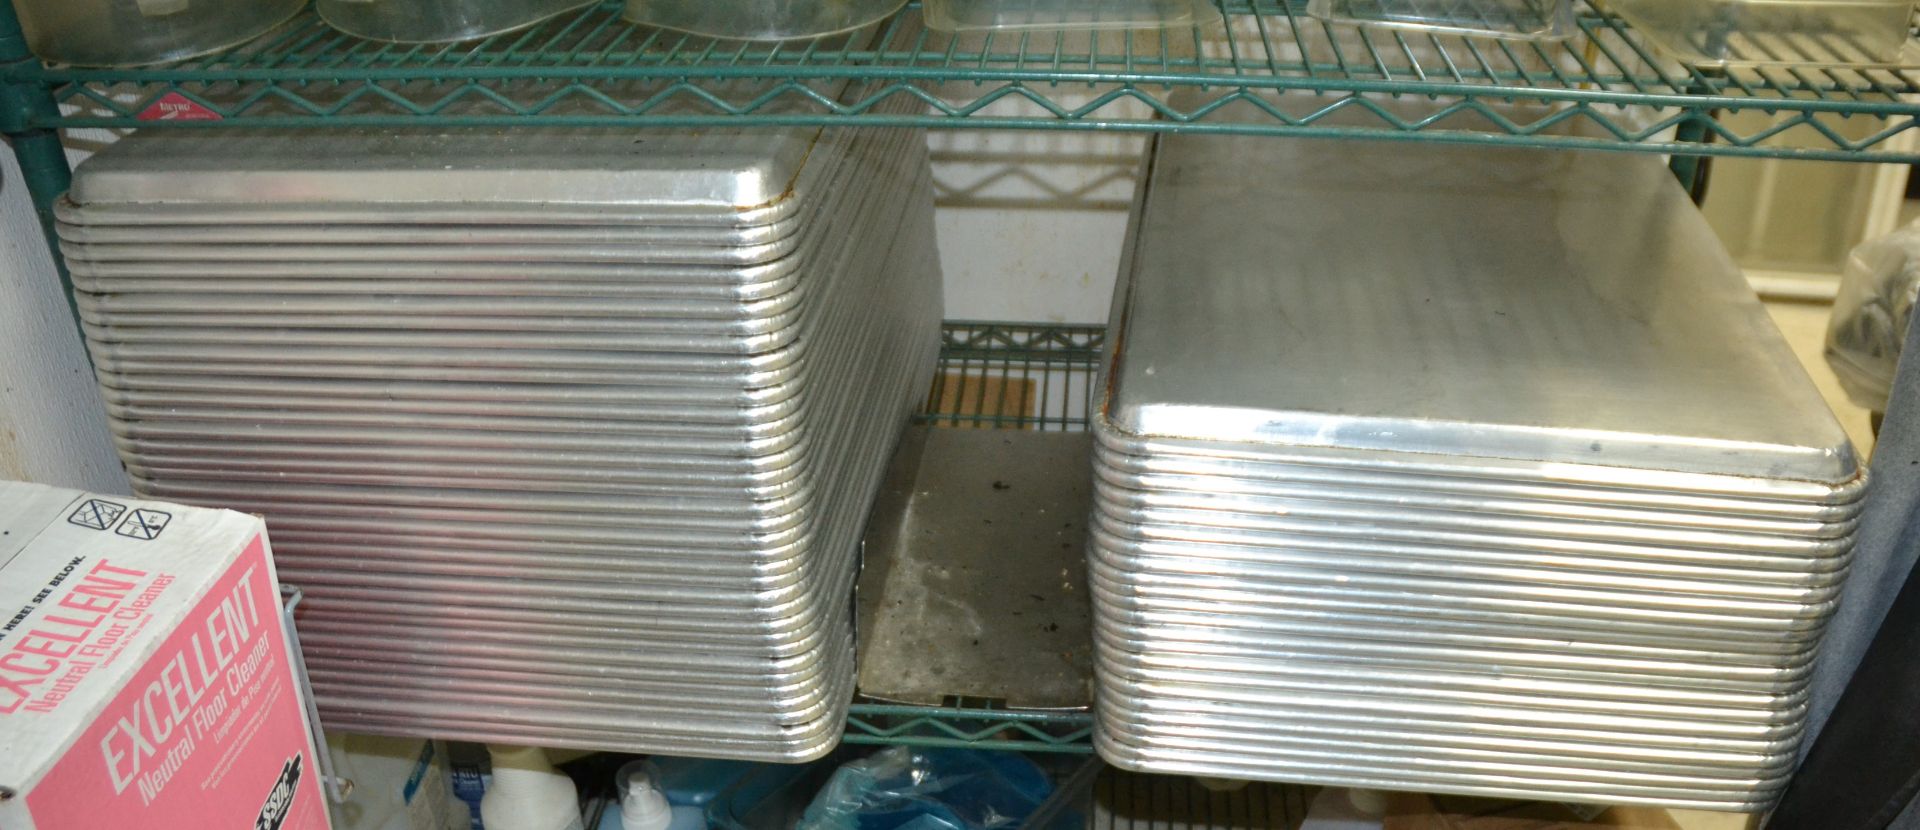 SHEET PANS, 18" X 26" - Image 2 of 2